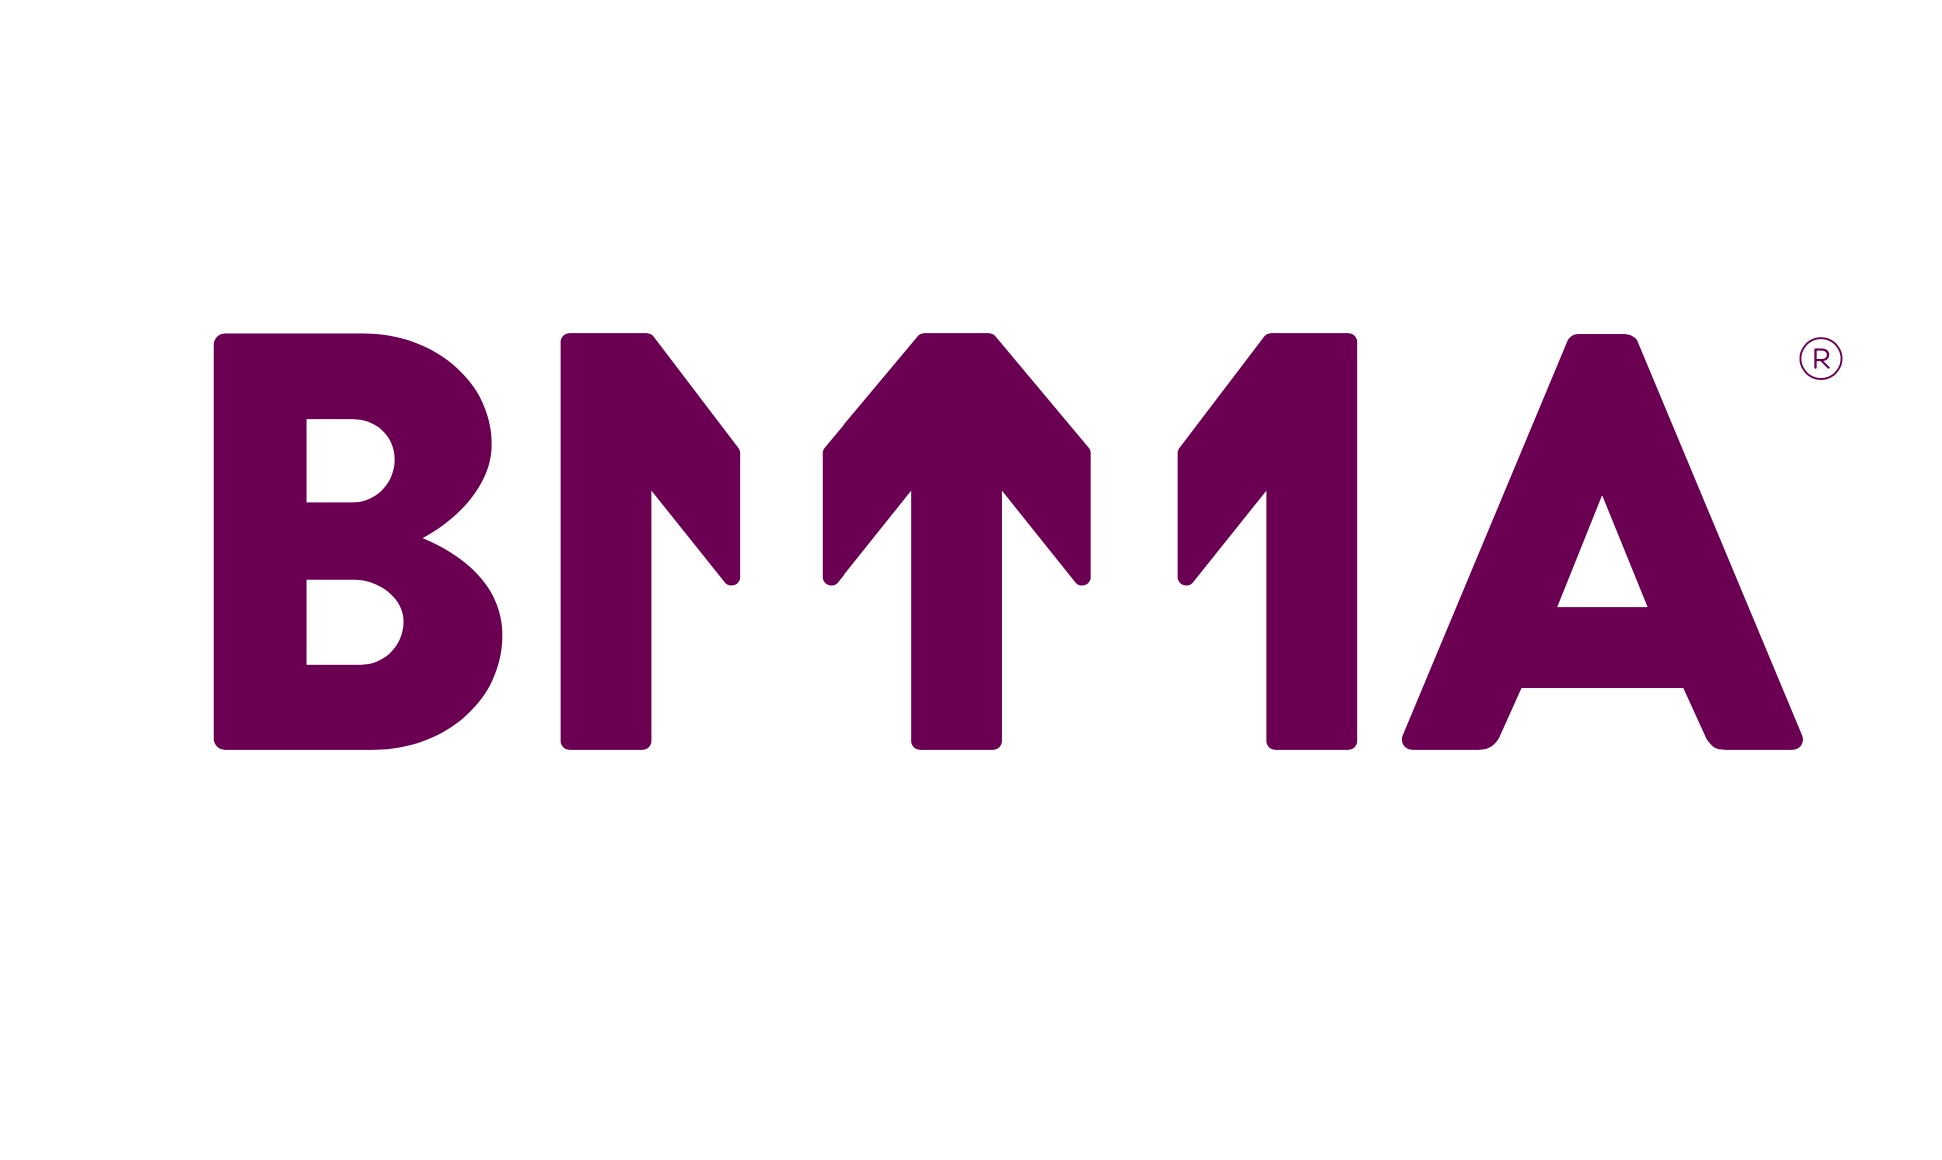 De BMMA onthult ook een nieuwe merkidentiteit voor zijn 50ste verjaardag